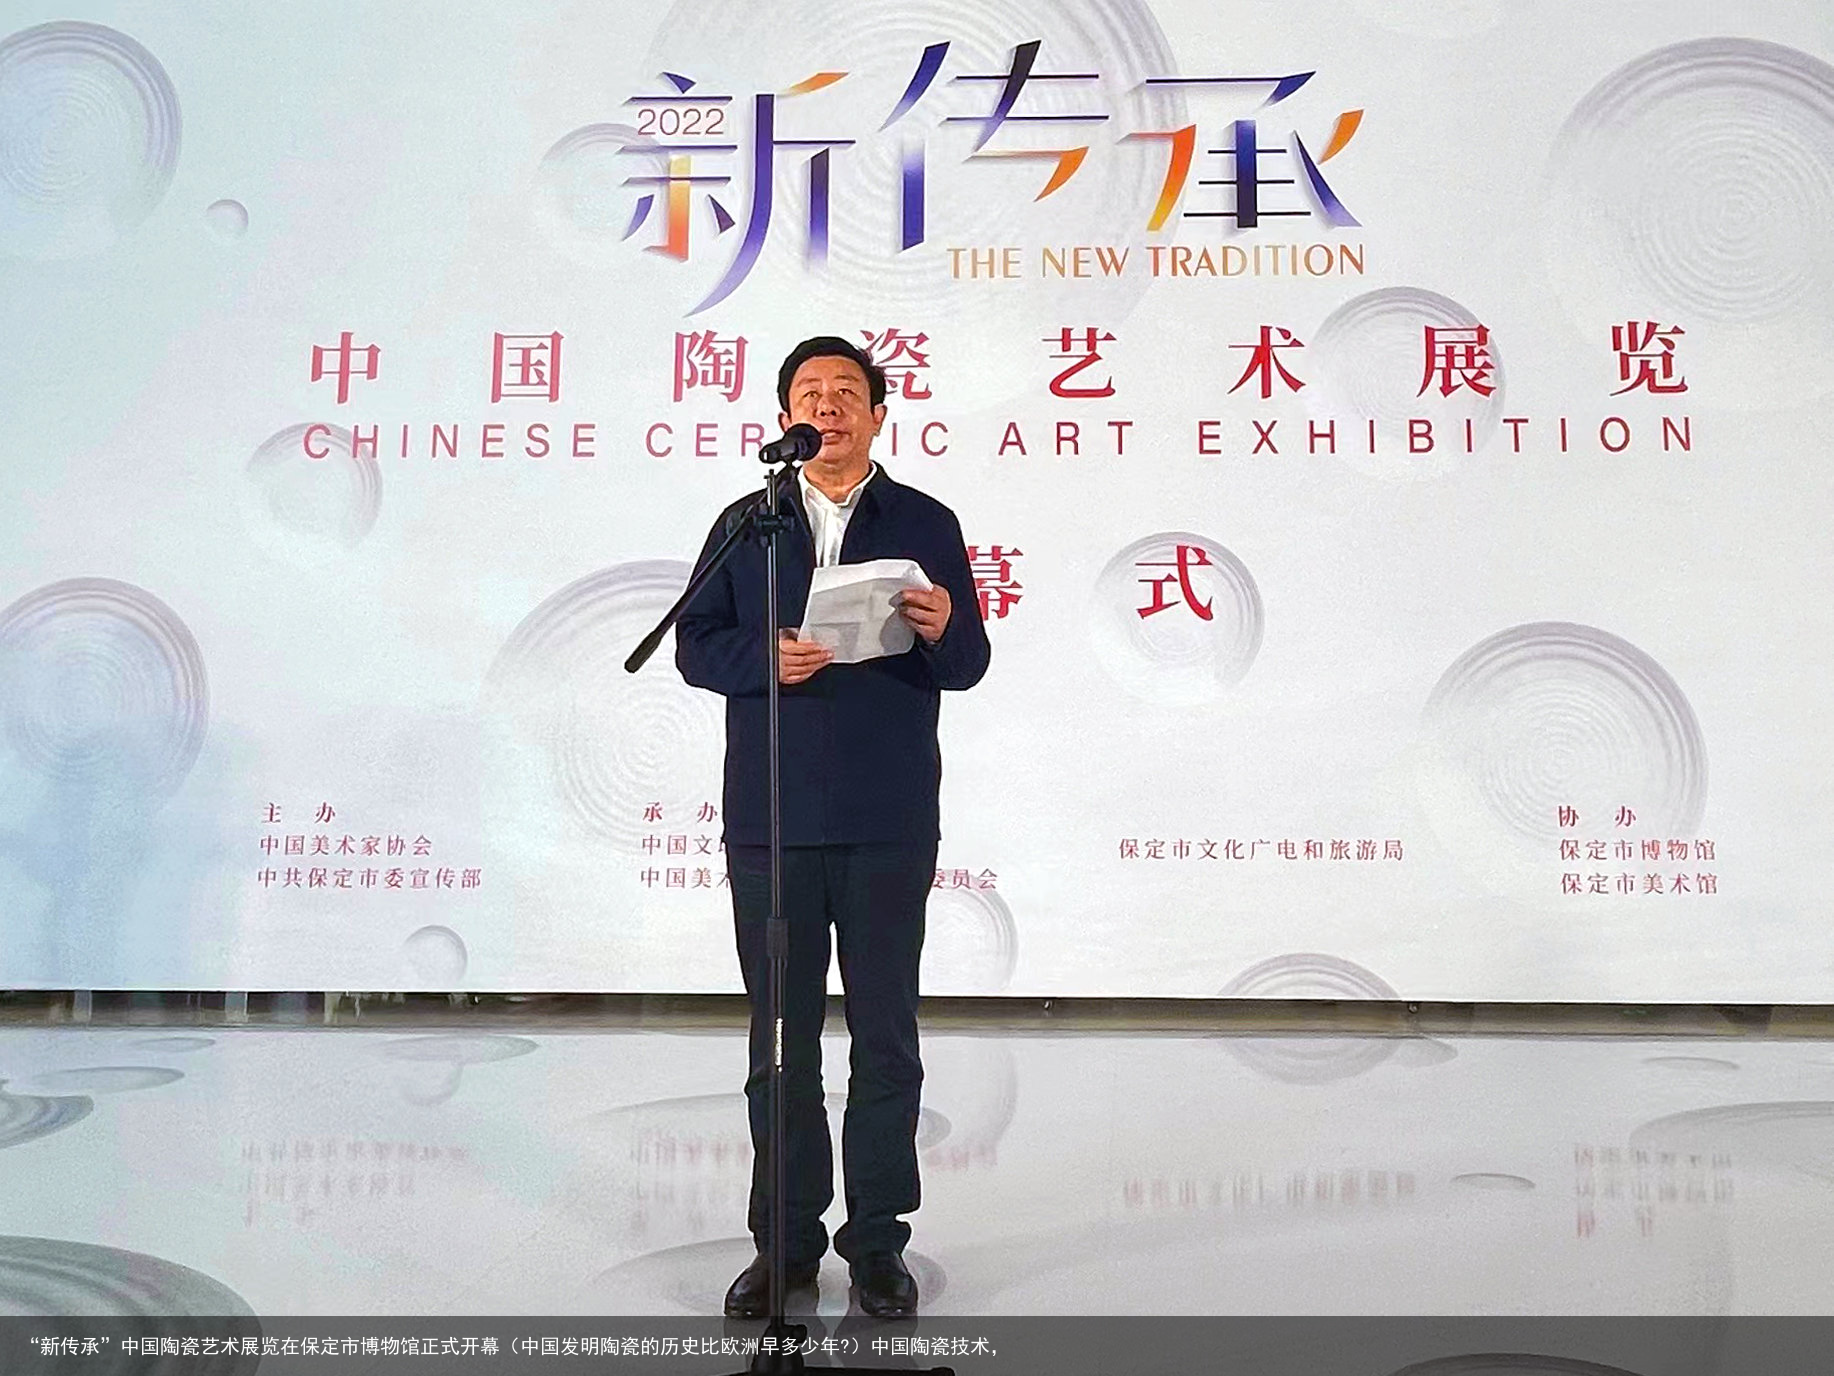 “新传承”中国陶瓷艺术展览在保定市博物馆正式开幕（中国发明陶瓷的历史比欧洲早多少年?）中国陶瓷技术，